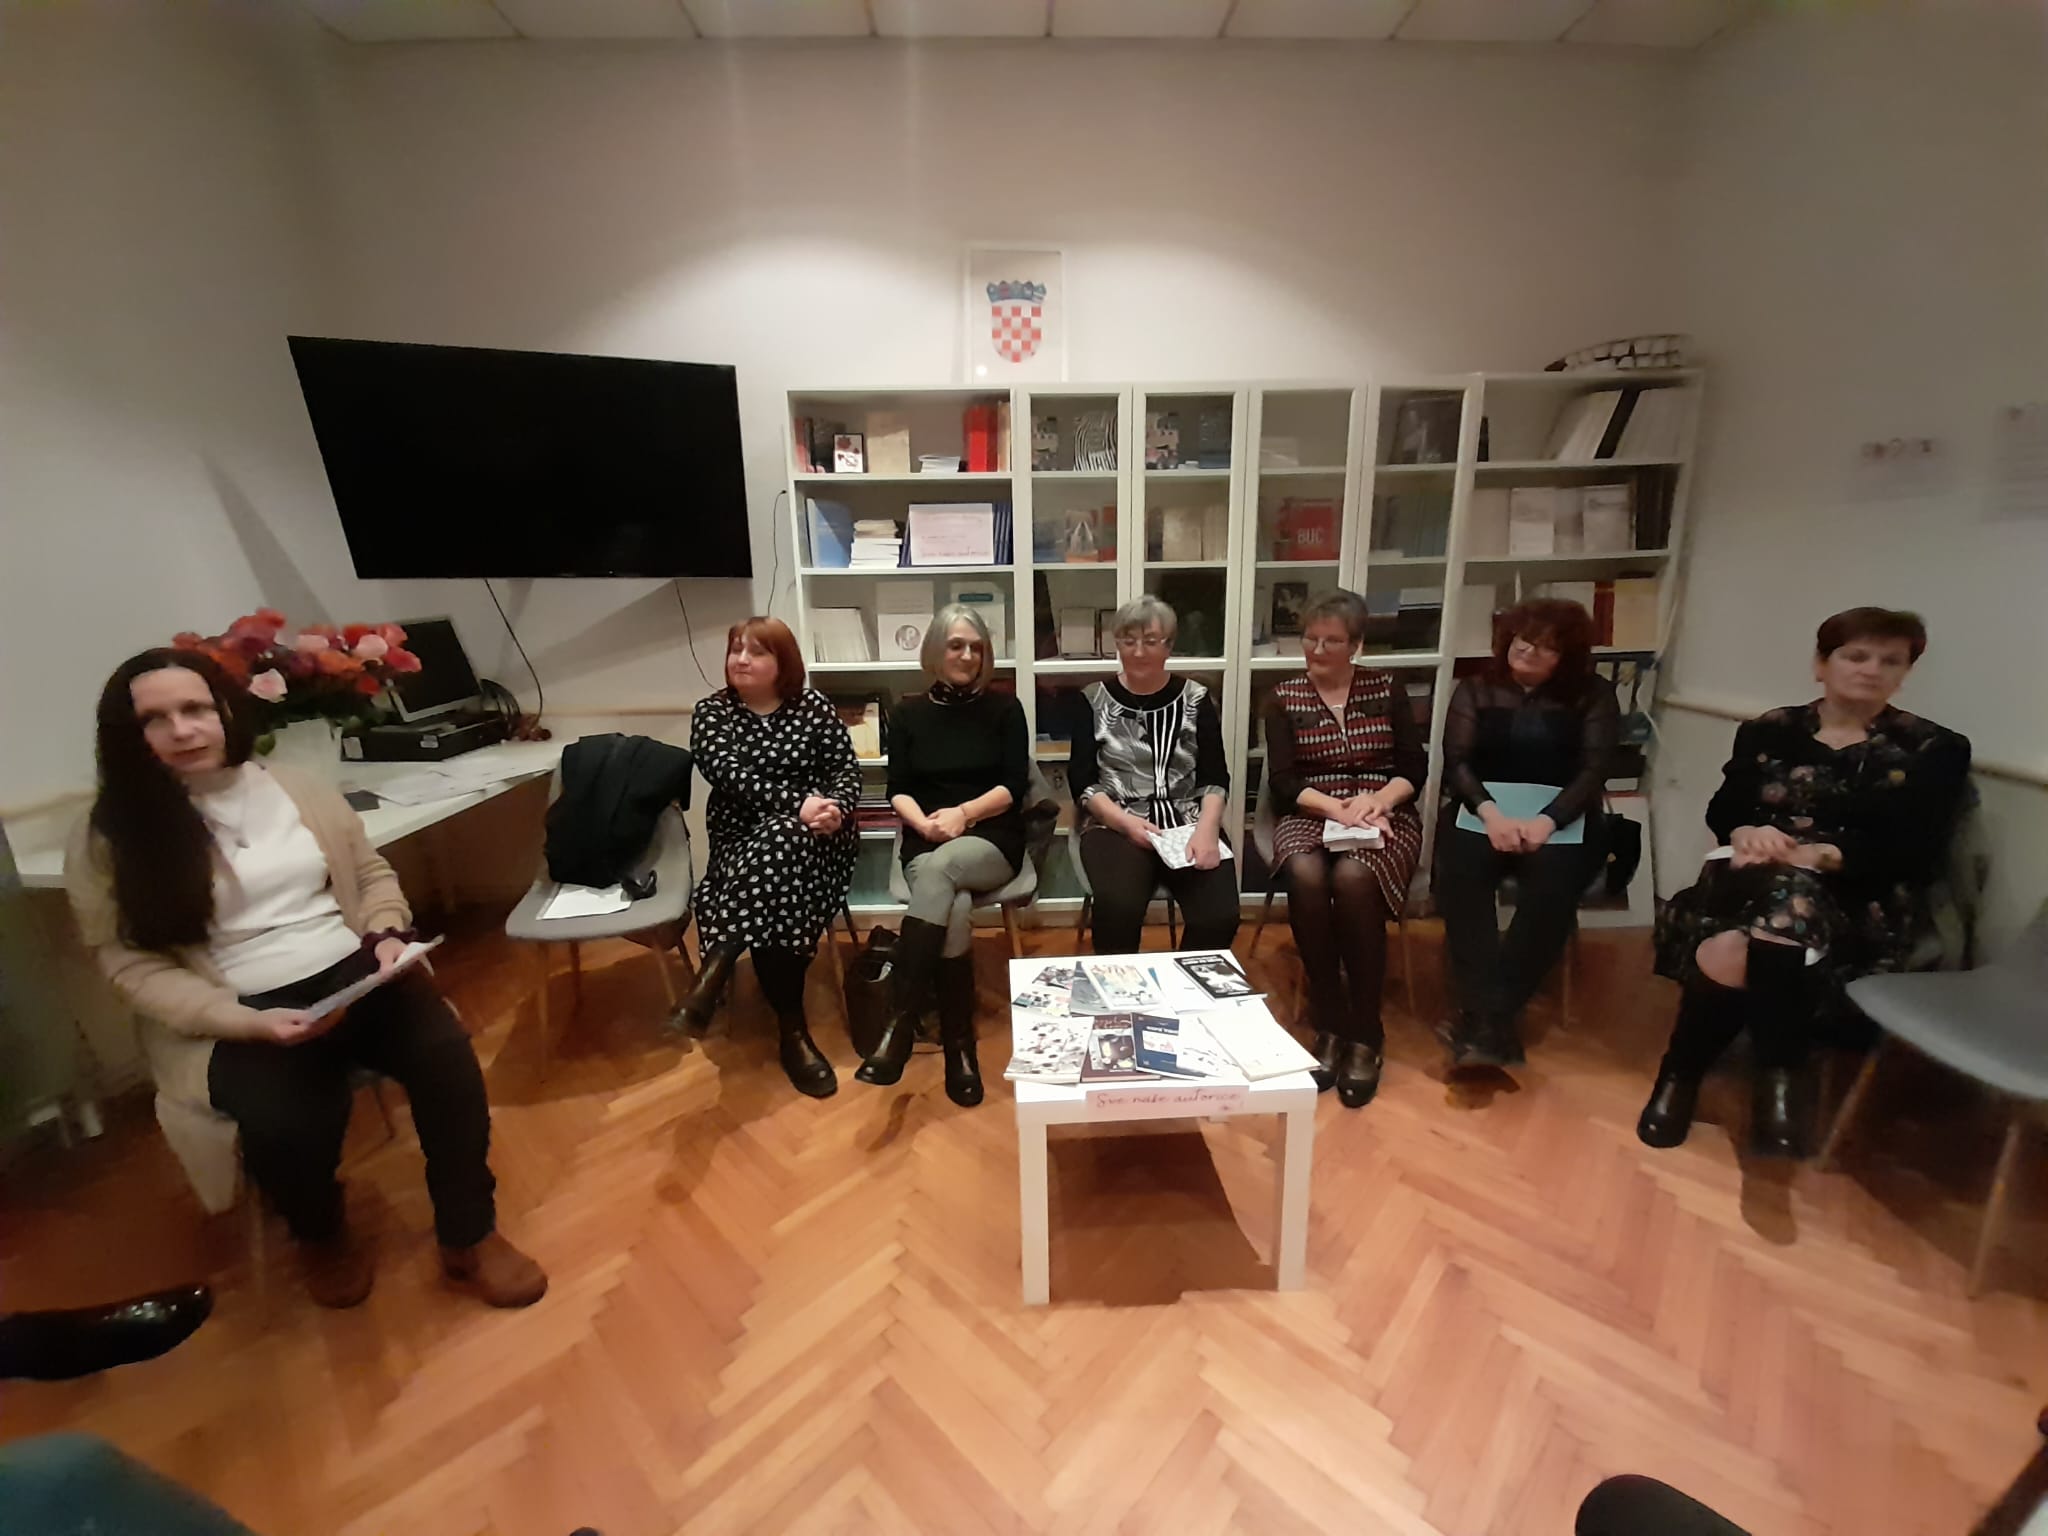 Bjelovarskoj publici predstavile se učiteljice koje su i spisateljice